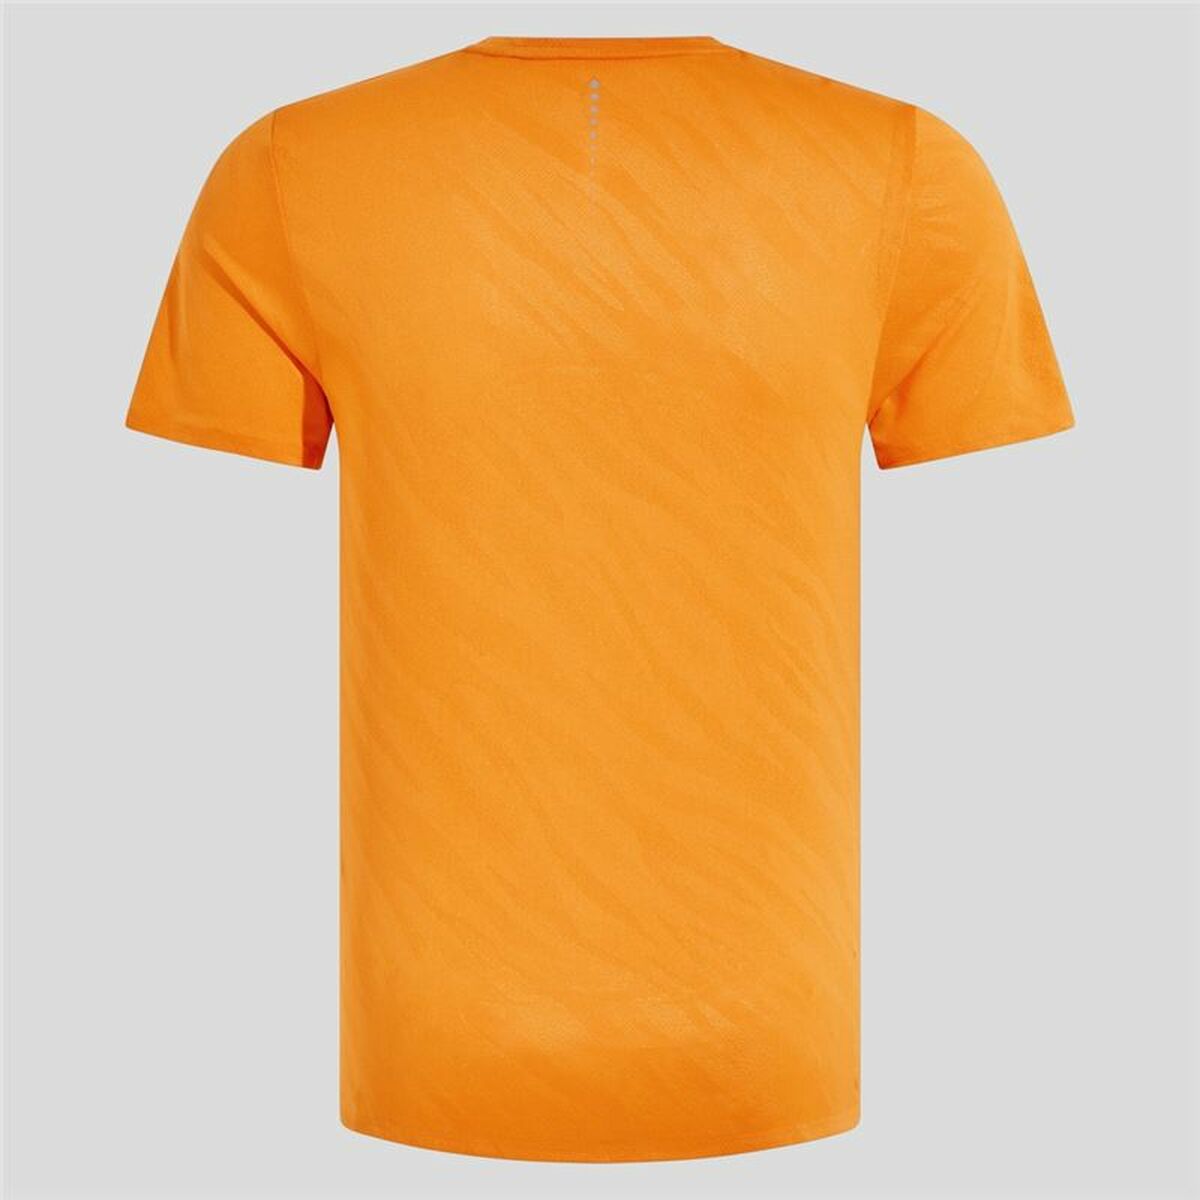 Unisex Short Sleeve T-Shirt Odlo Zeroweight Enginee Orange